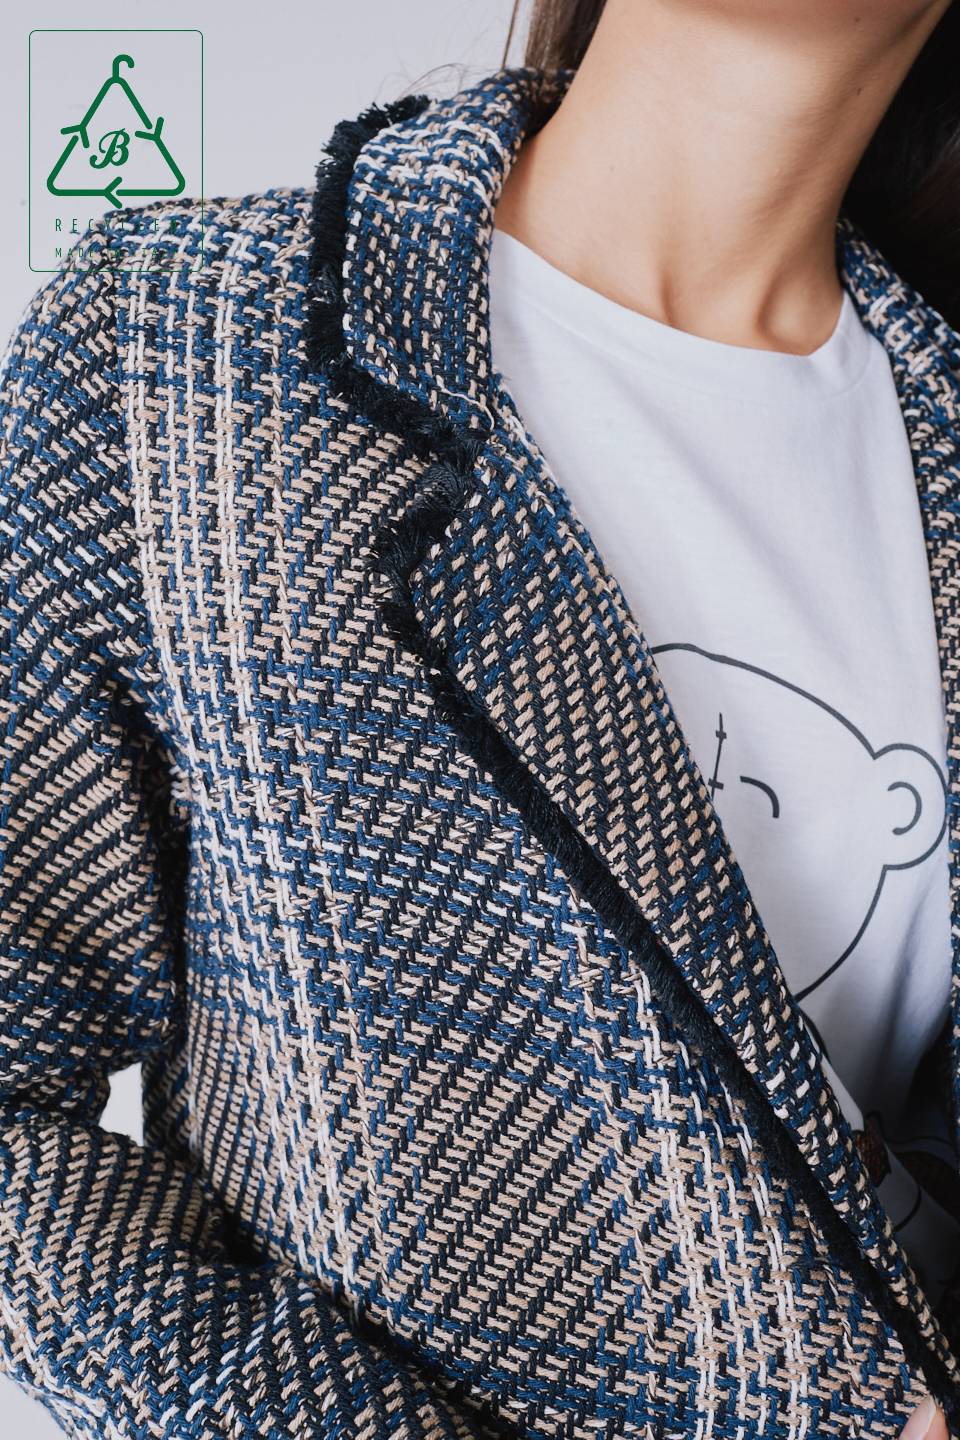 Giacca Chanel lunga in cotone riciclato cammello - Autunno - Inverno 2022 | Brend